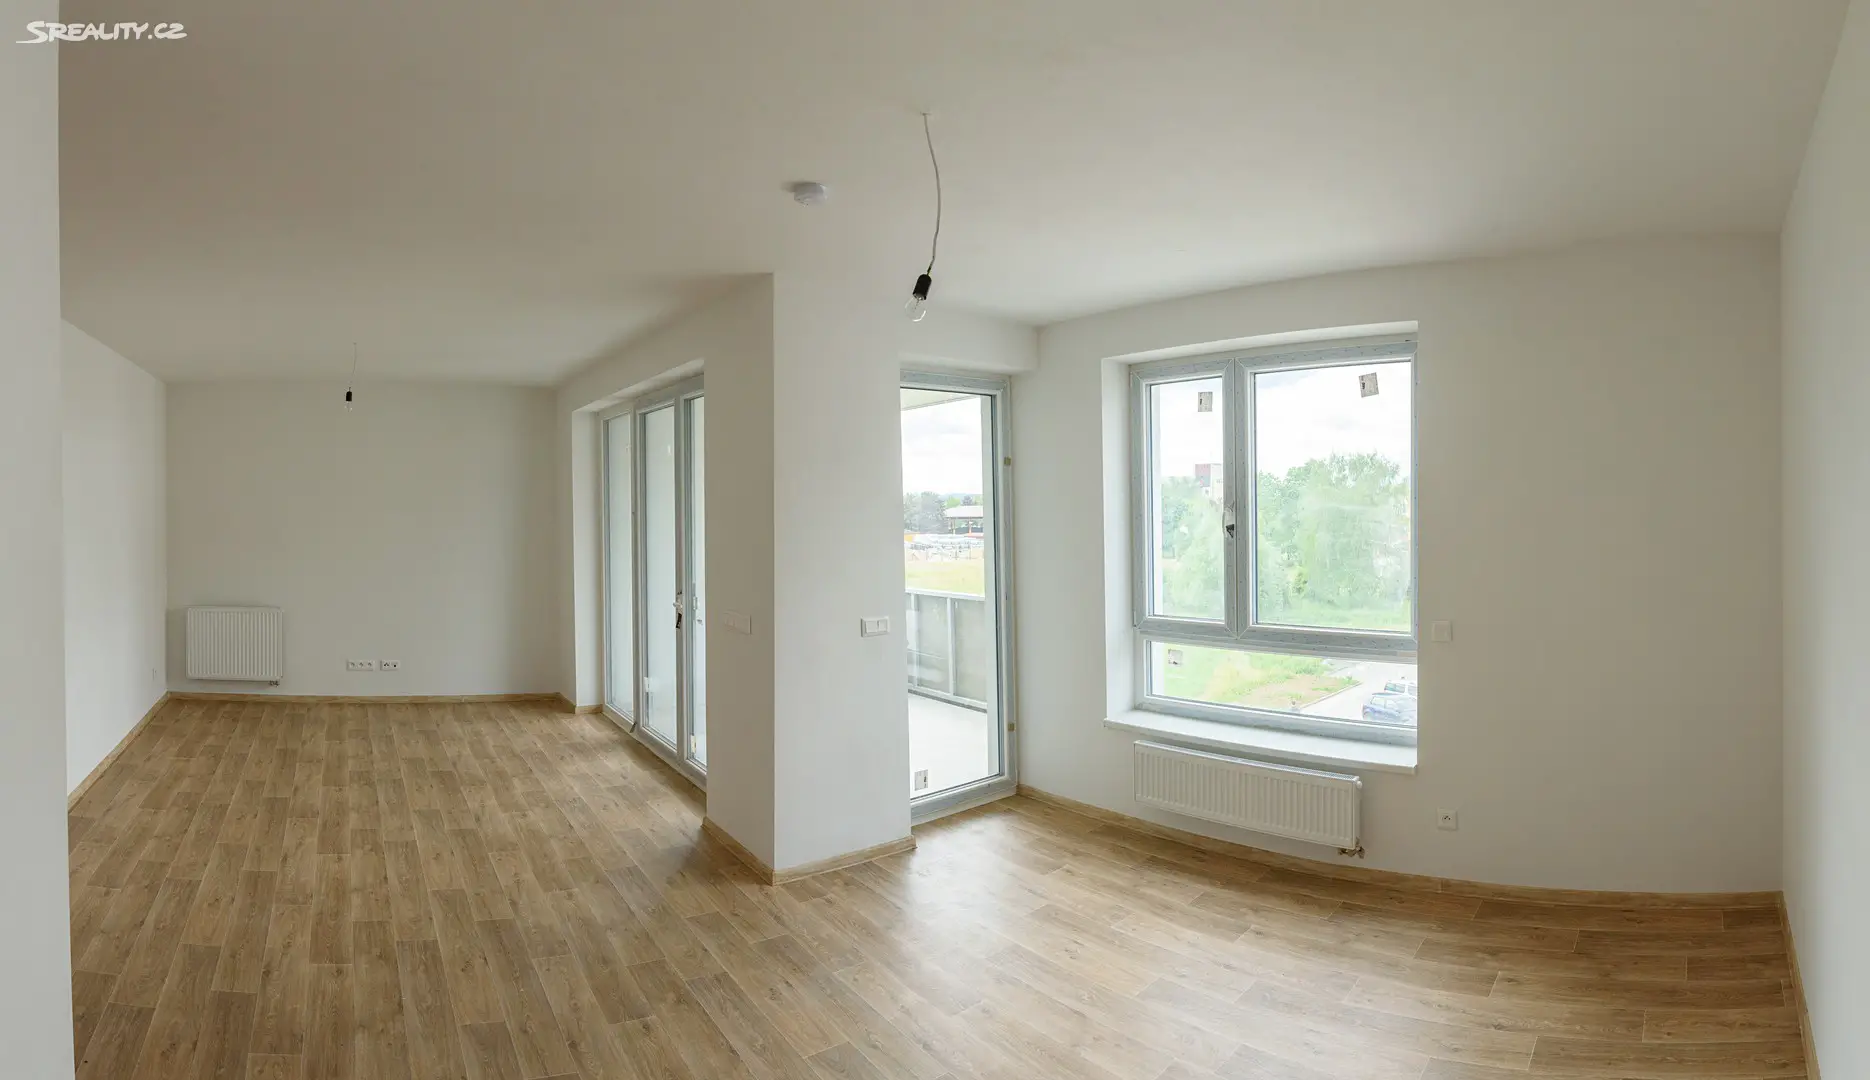 Prodej bytu 2+kk 59 m², Javornická, Rychnov nad Kněžnou